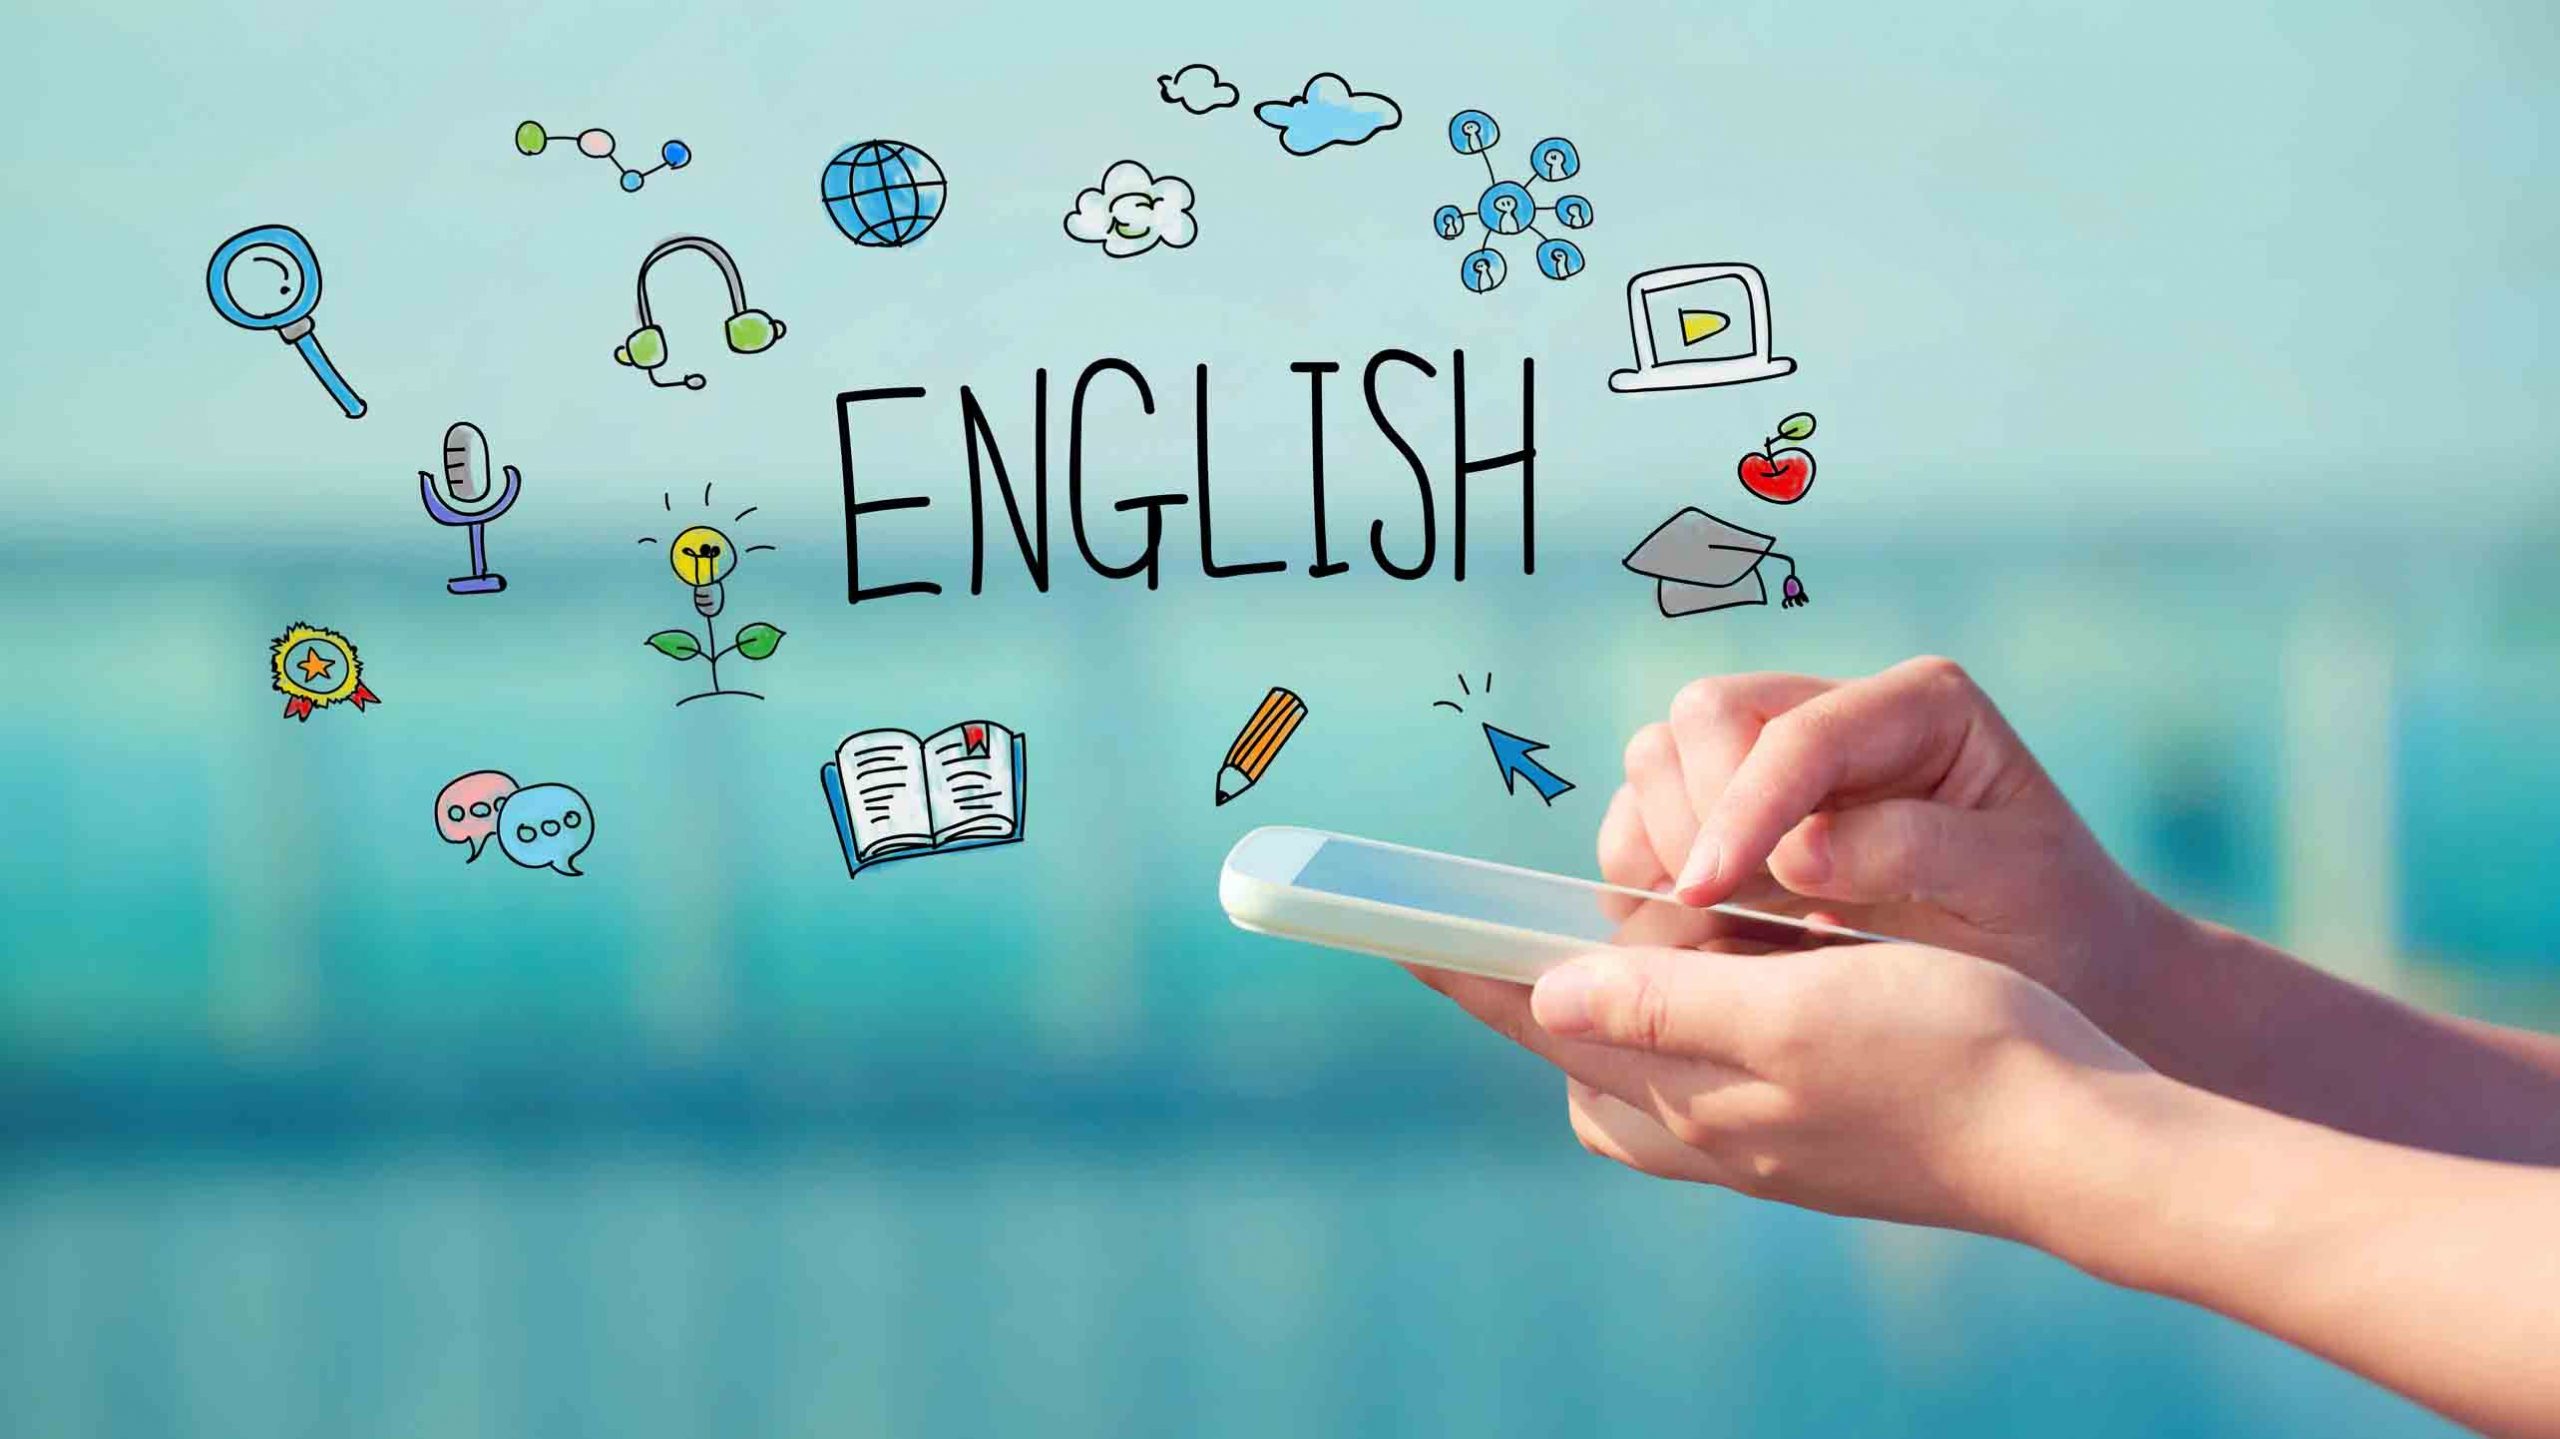 Học tiếng Anh giúp bạn hội nhập vì đây là ngôn ngữ toàn cầu